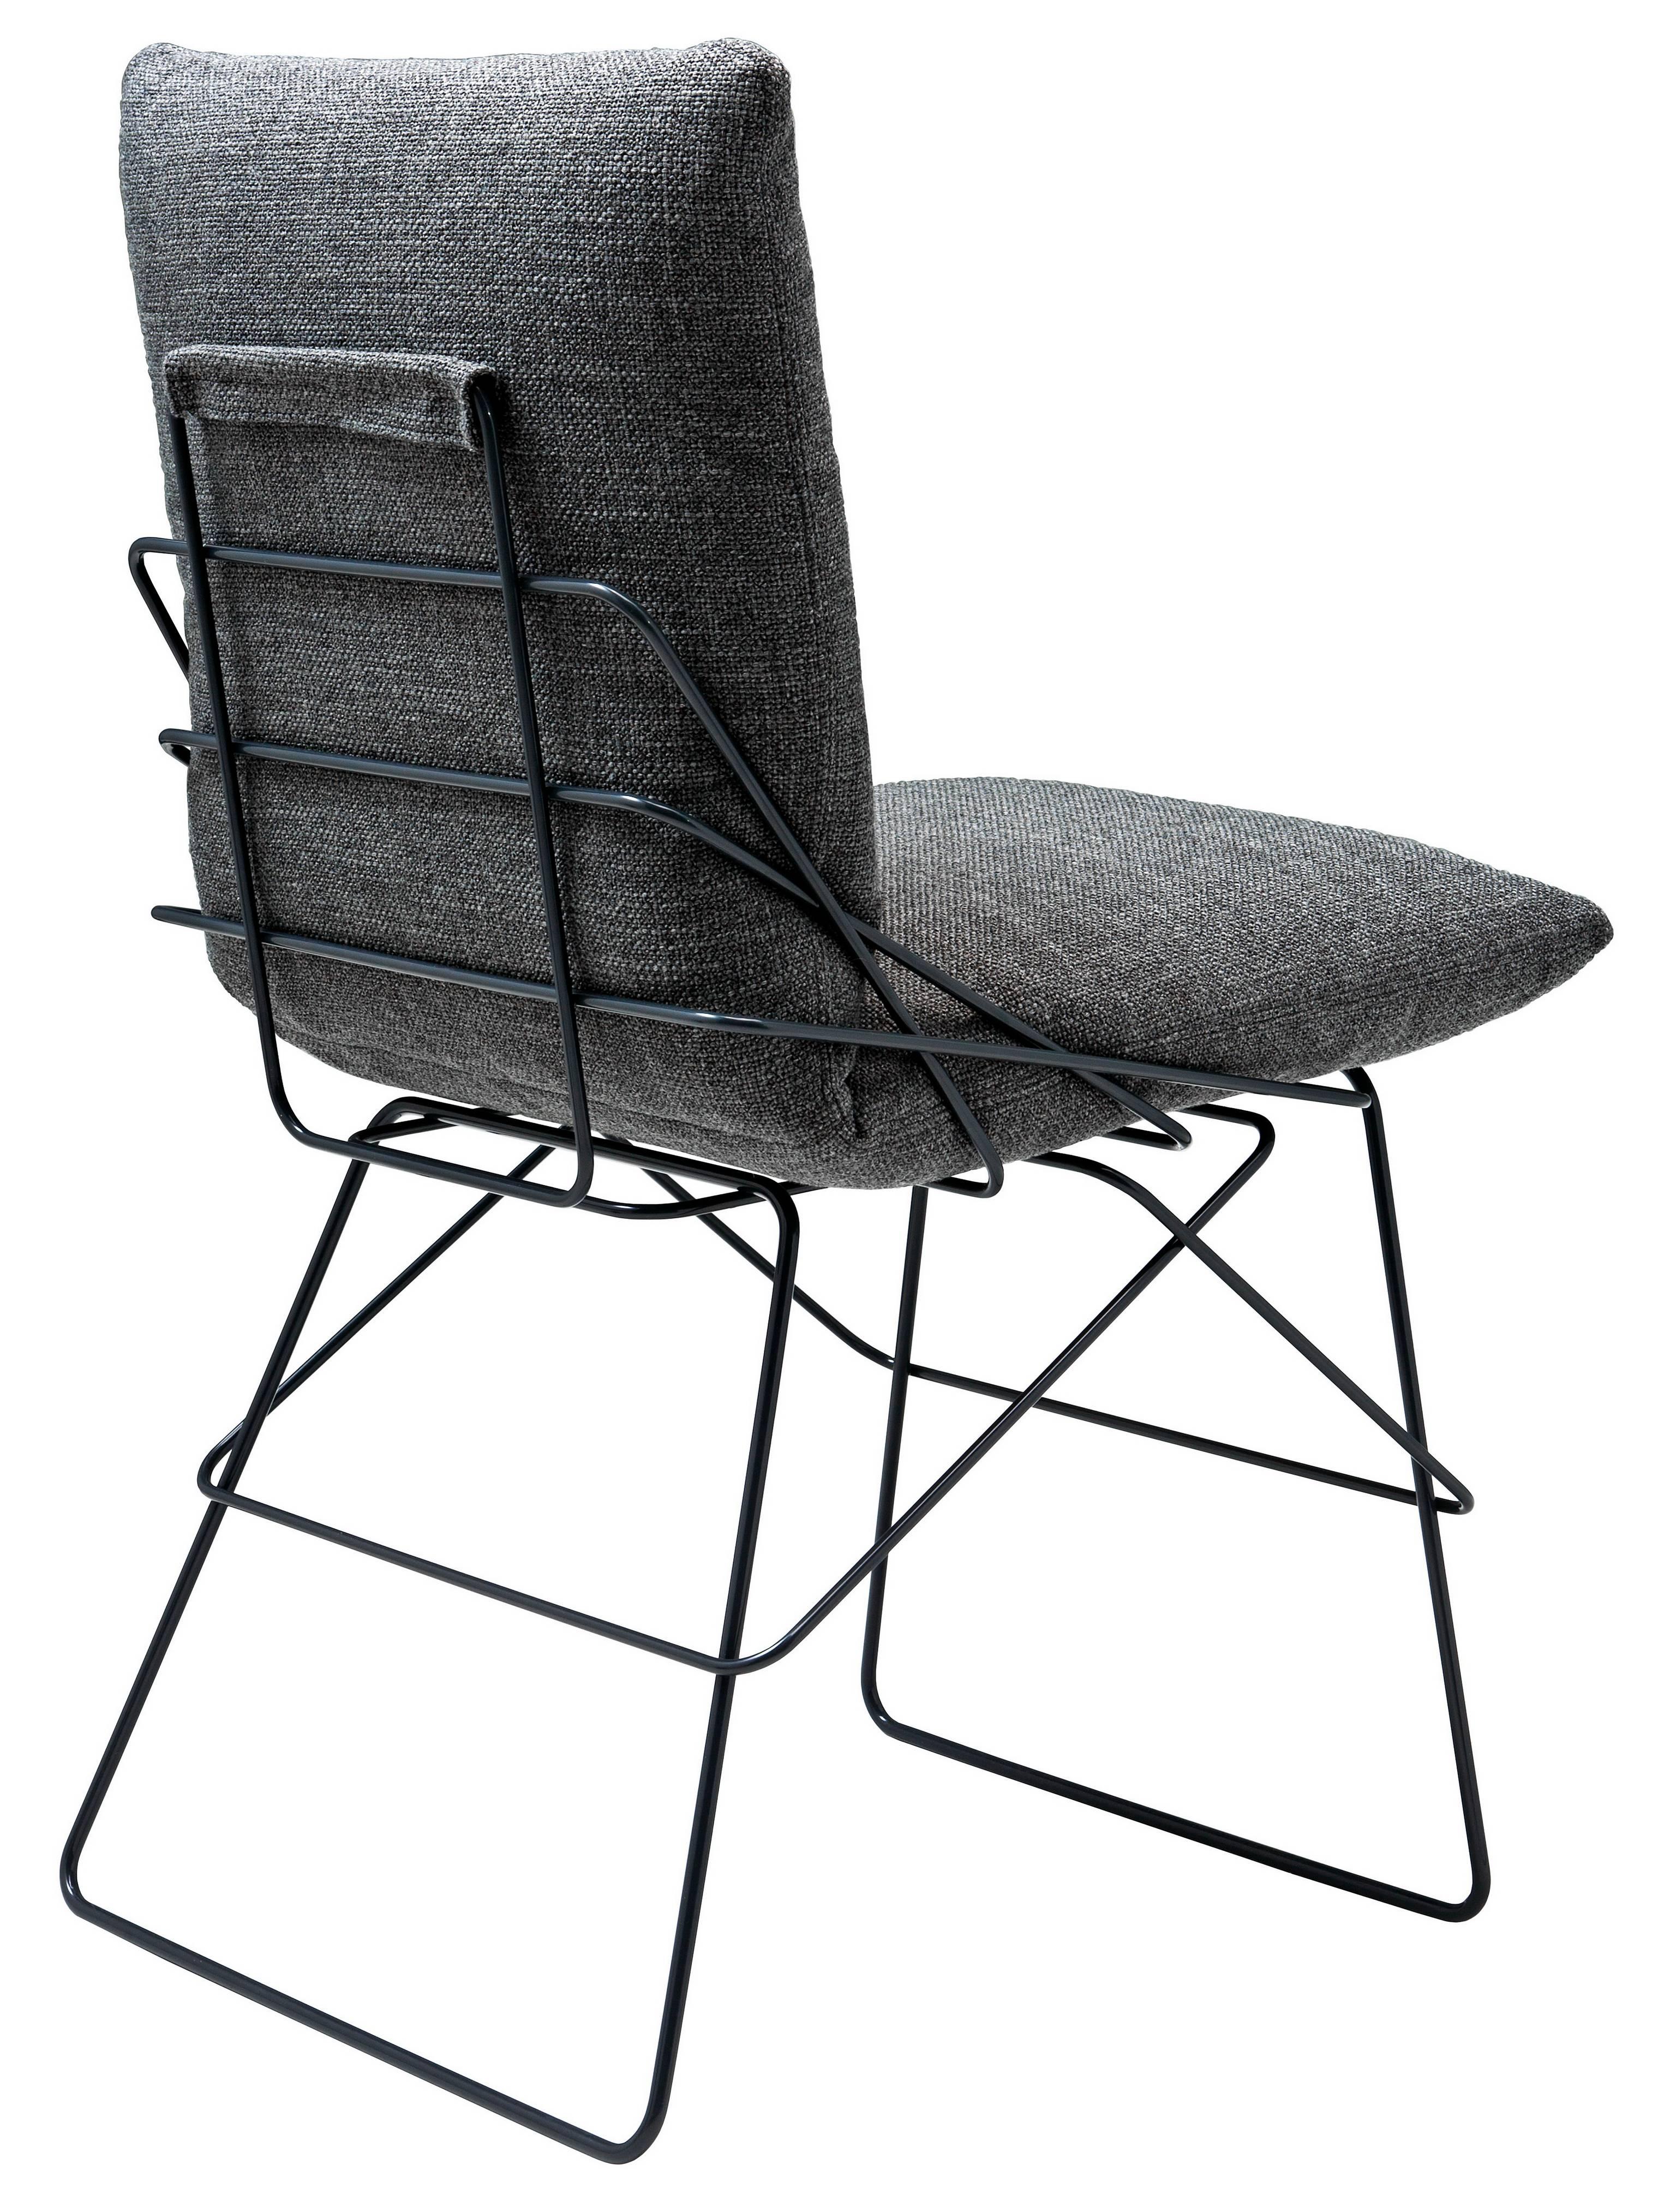 Italian Enzo Mari Driade Sof Sof Chair in Graphite Gray, 1972 For Sale